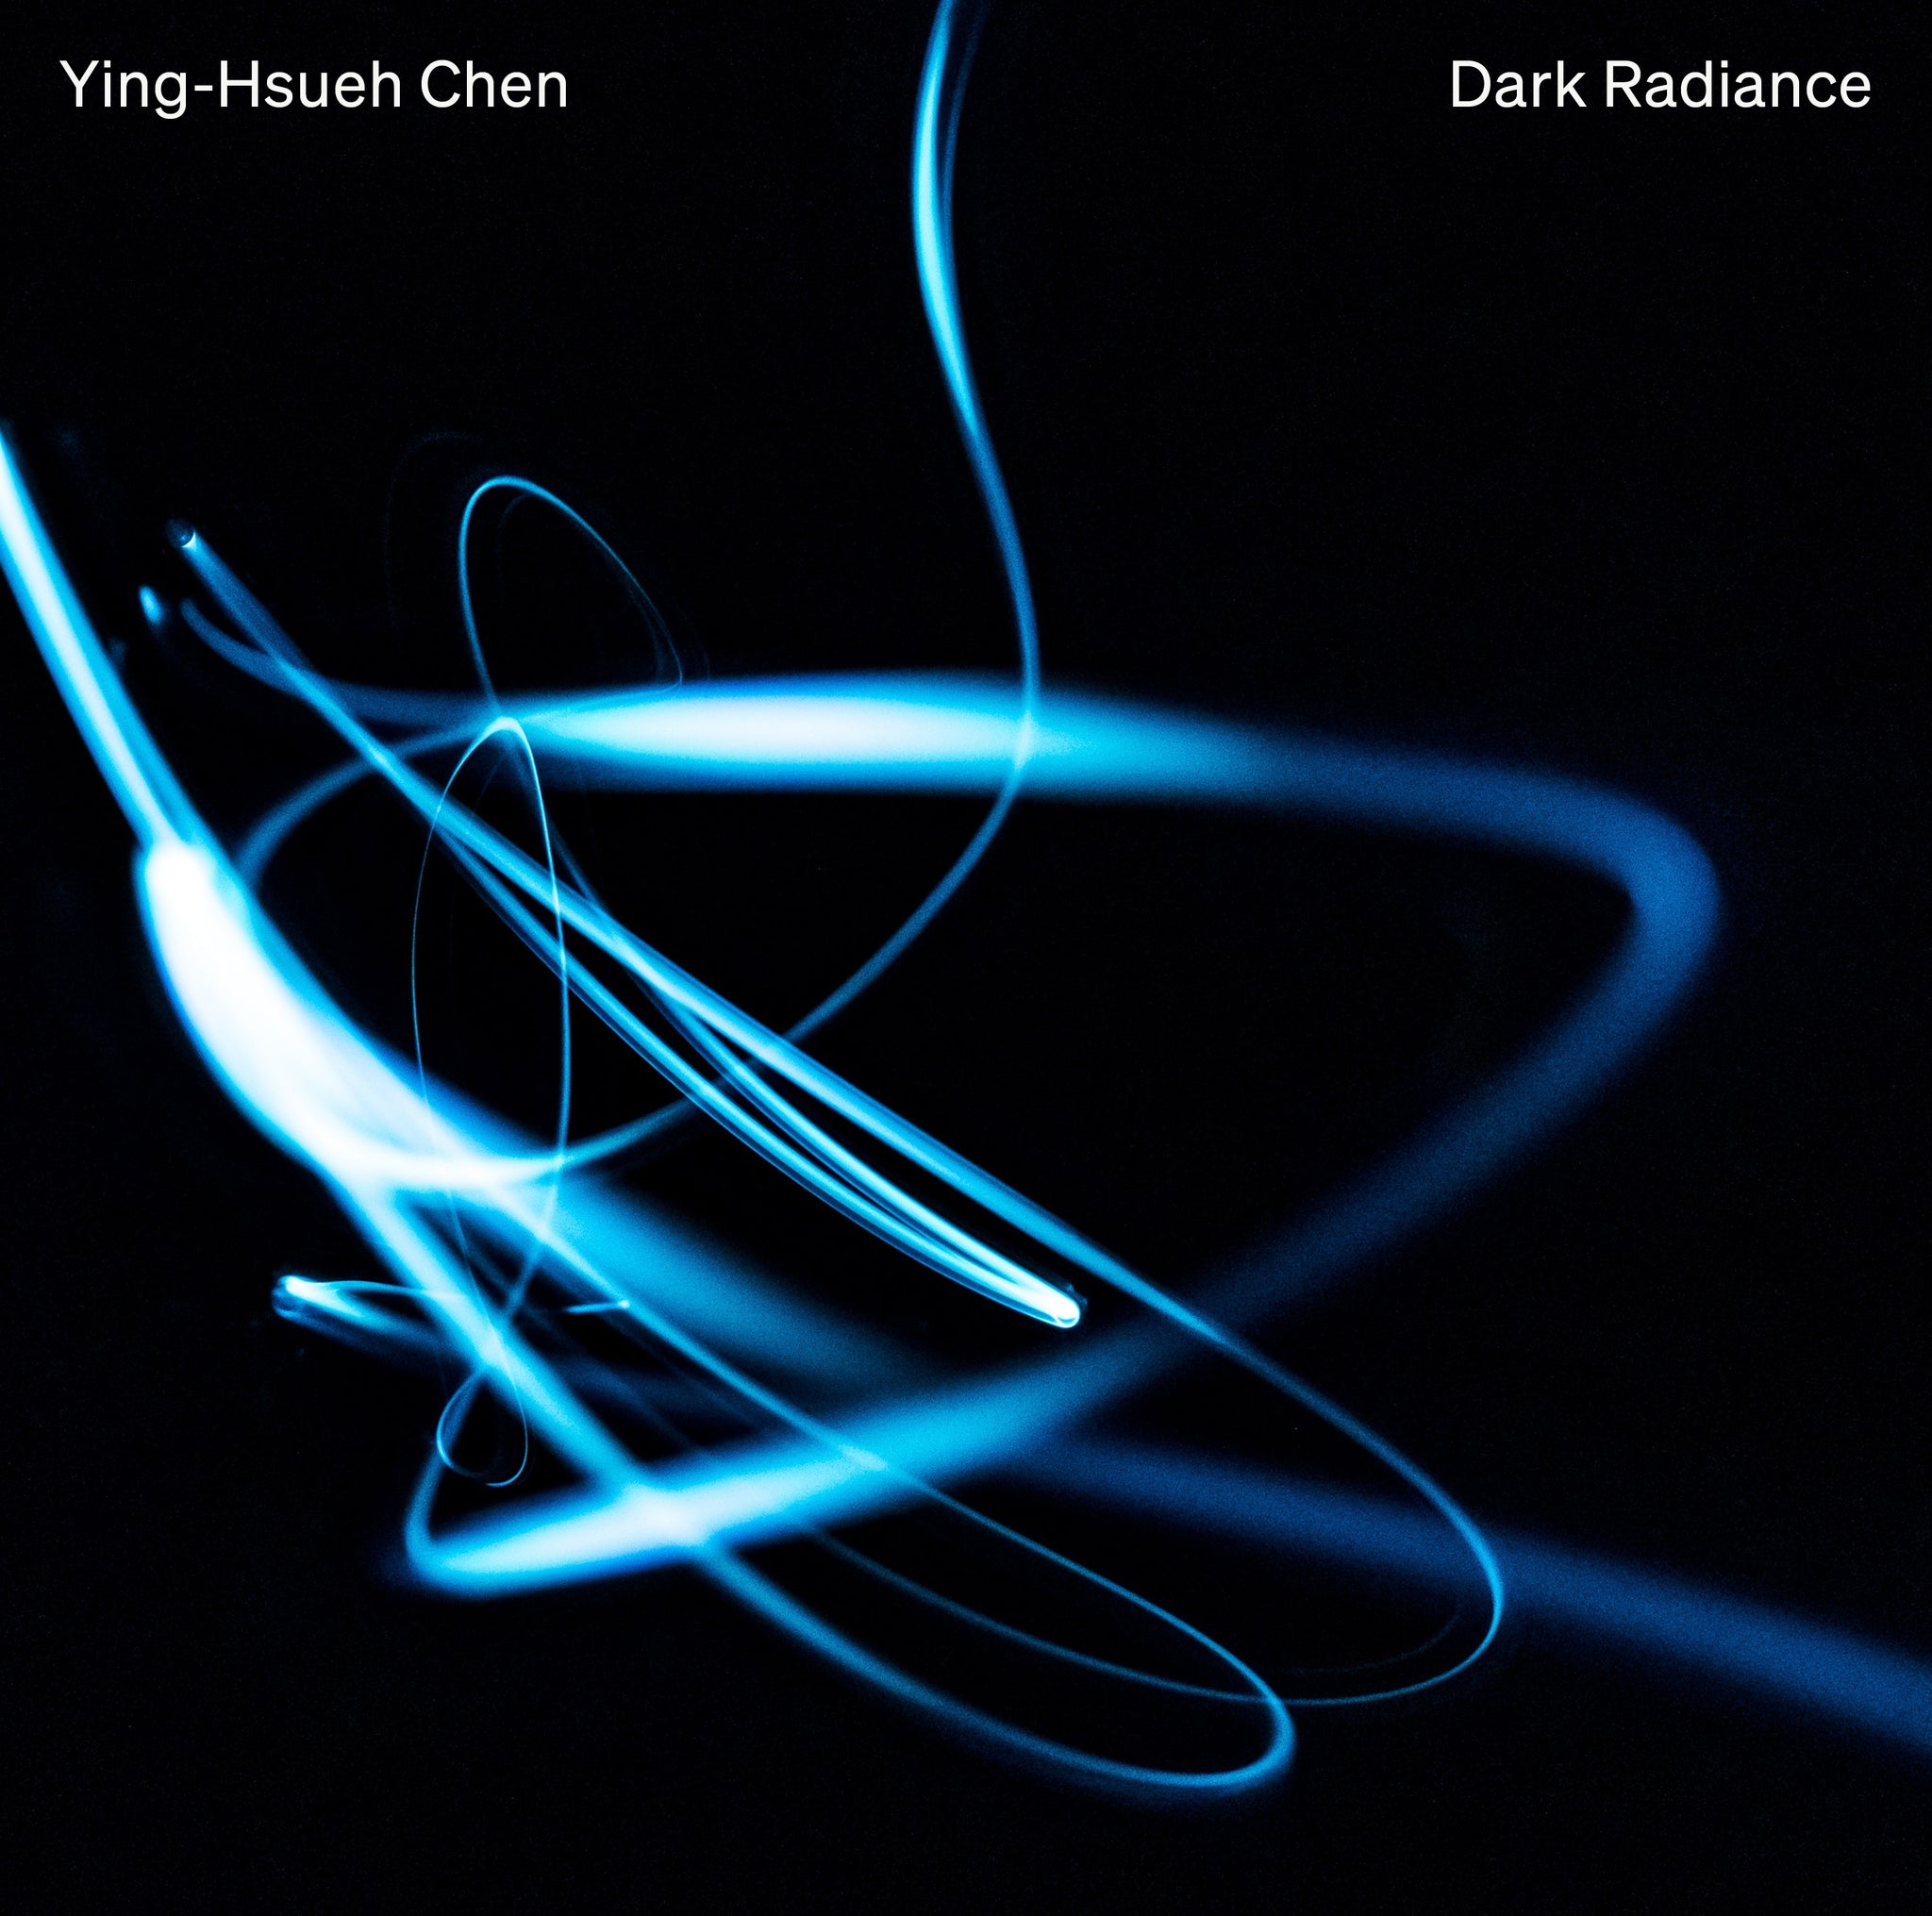 Dark Radiance / Ying-Hsueh Chen